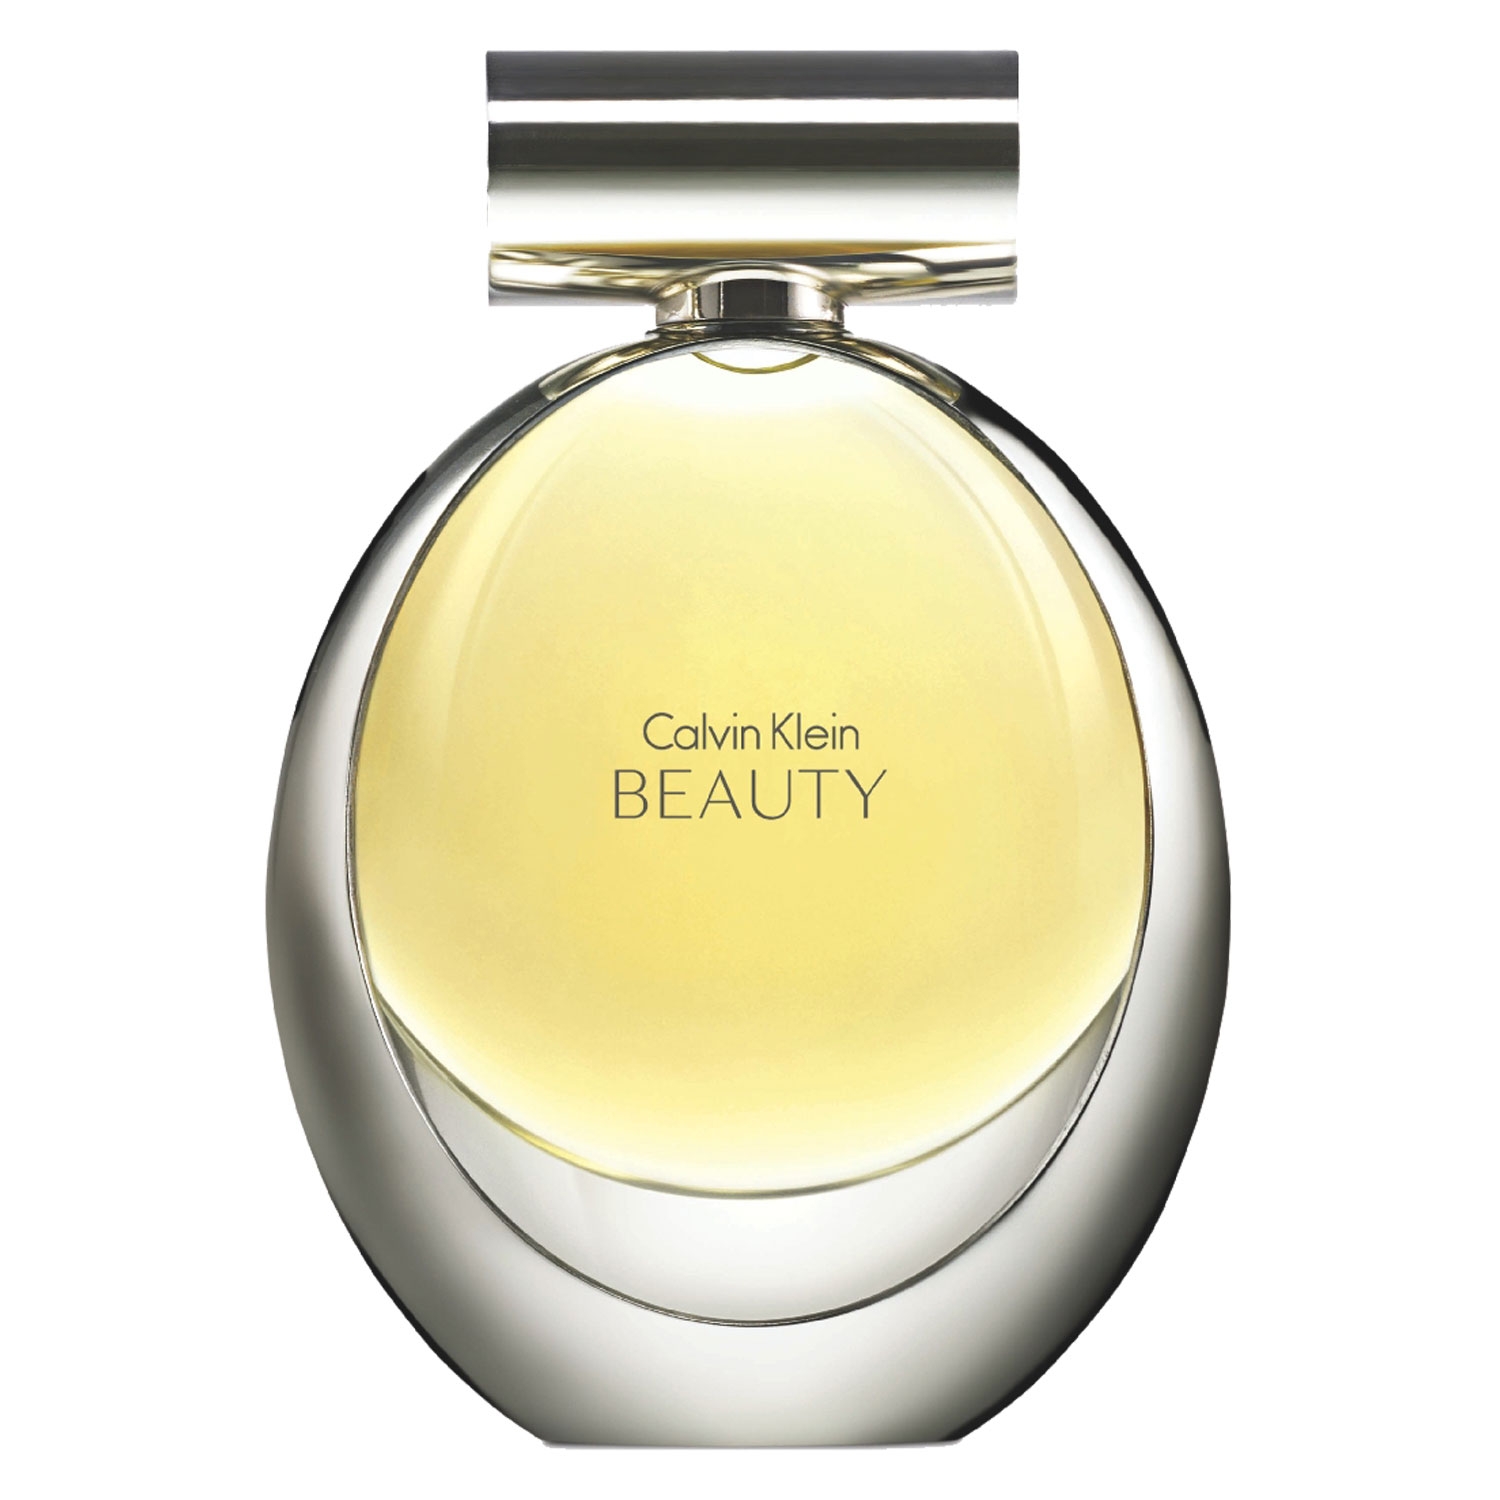 Produktbild von Beauty - Eau de Parfum